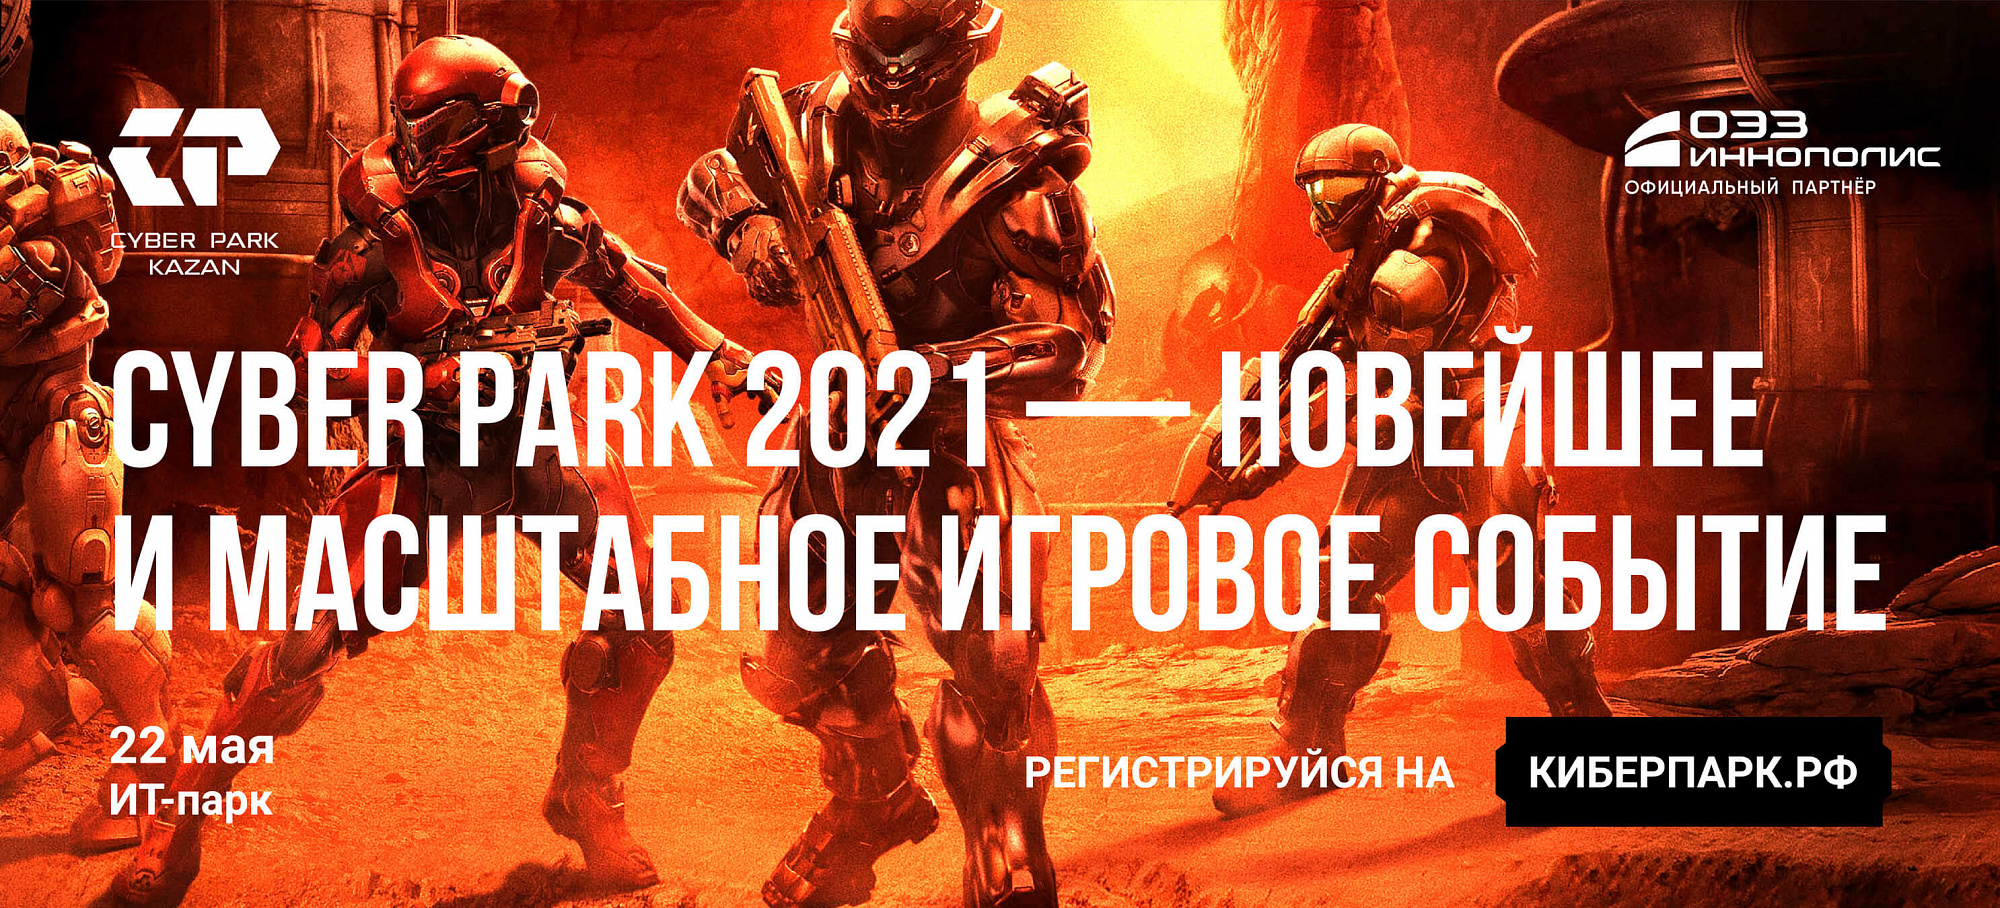 ОЭЗ «Иннополис» — Официальный партнер фестиваля киберспорта CyberPark 2021!